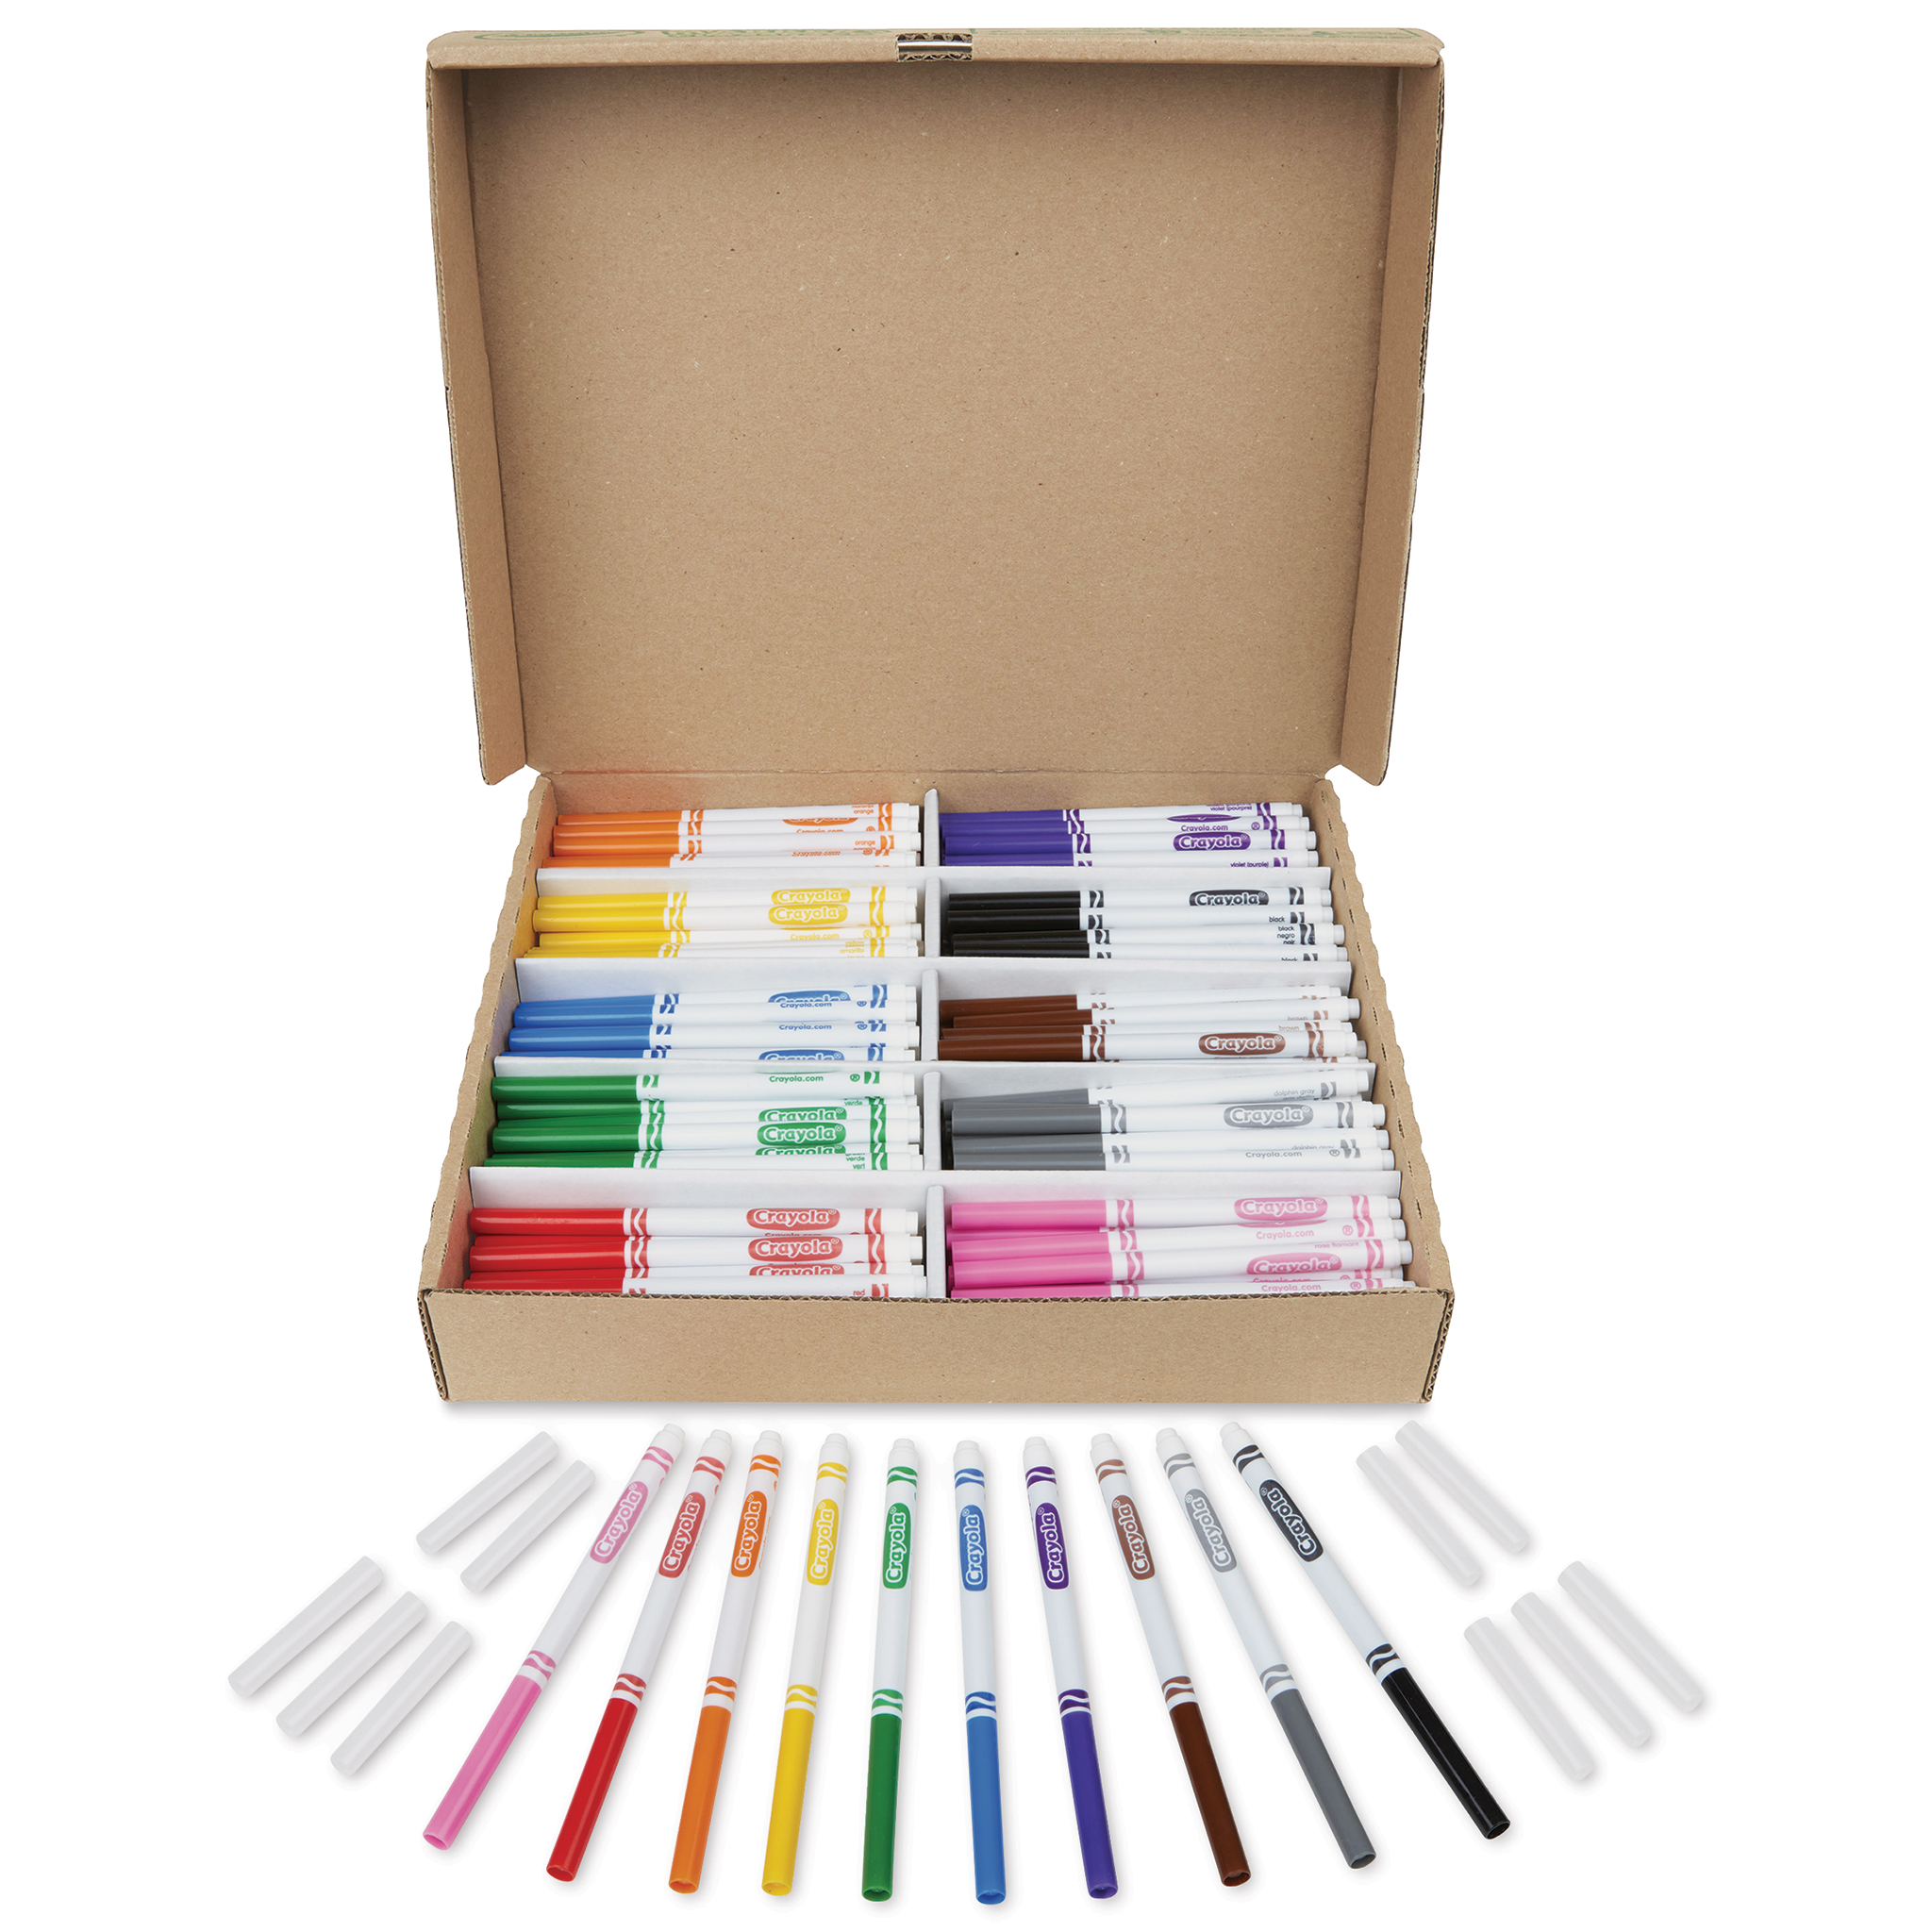 Crayola Markers, Fine Pt. (6 boxes/unit), #7709 (E-59